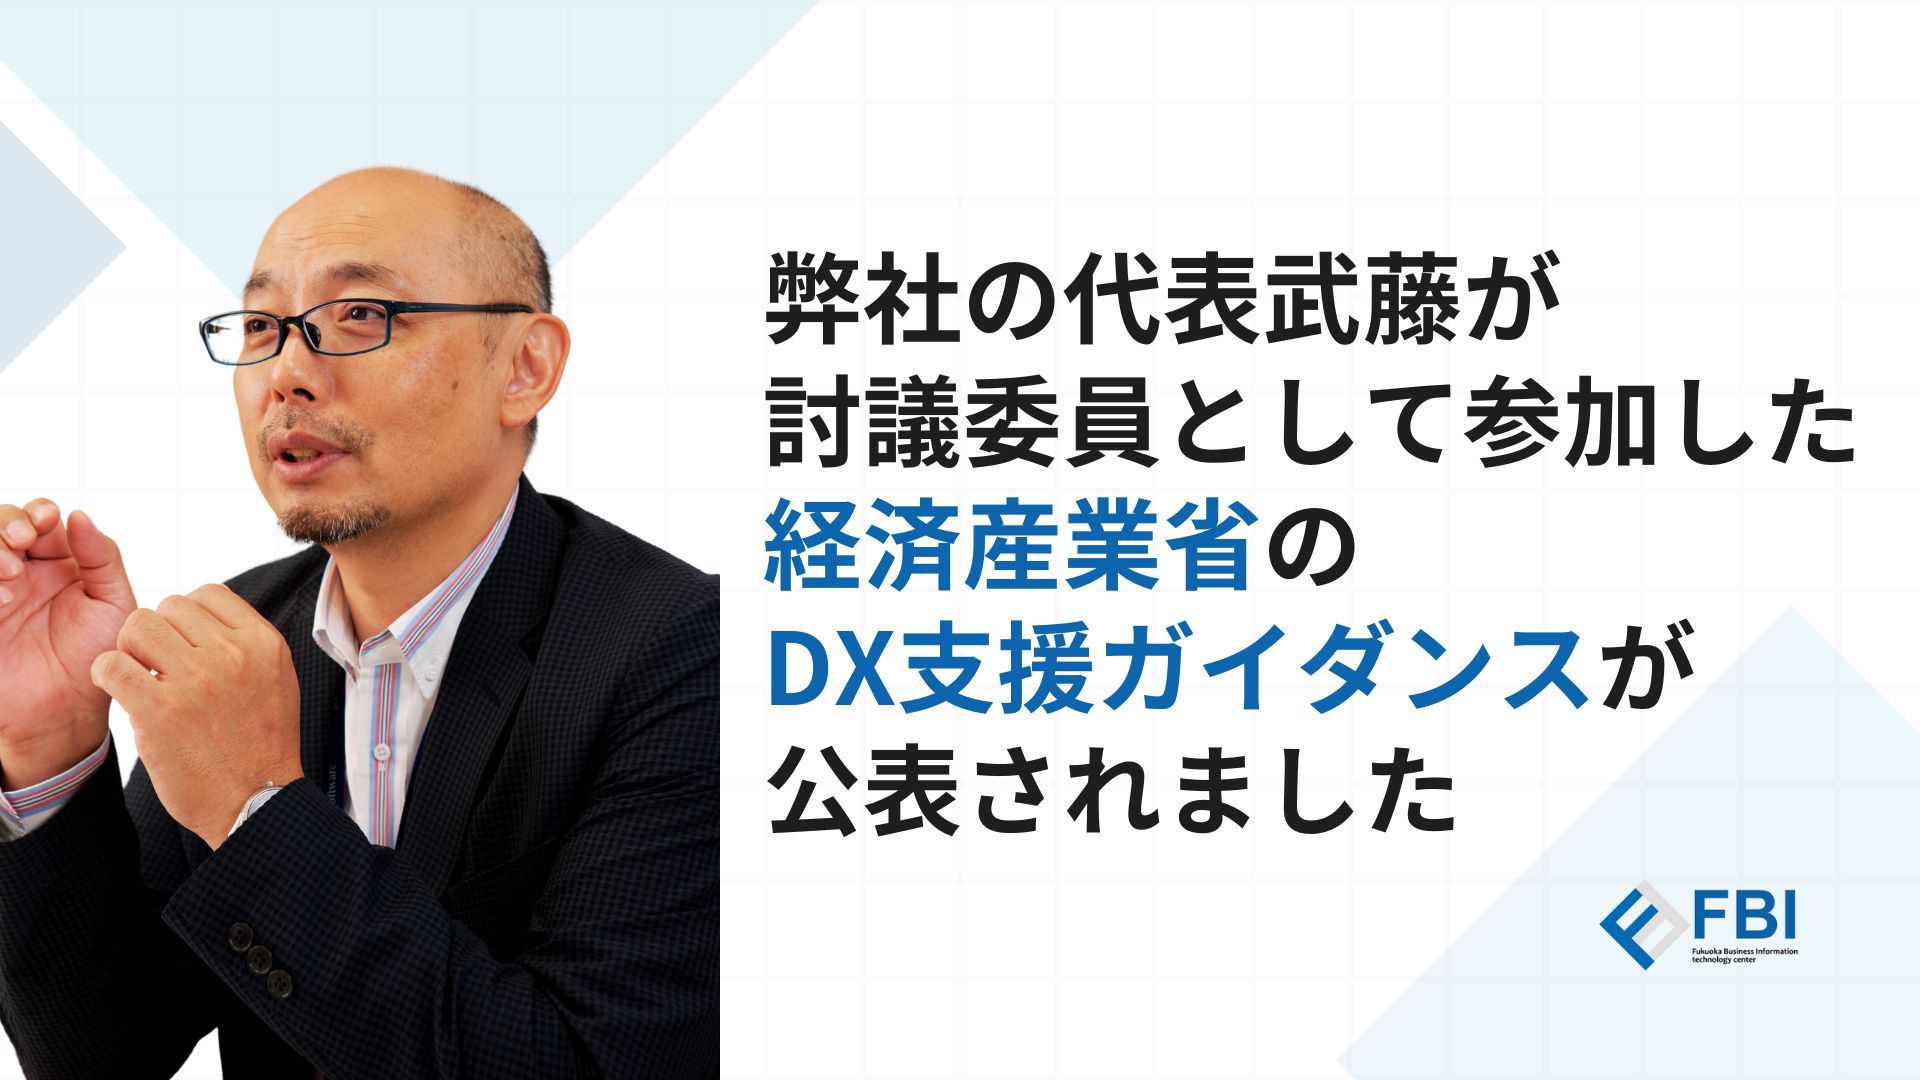 武藤元美
弊社の代表武藤が討議委員として参画した経済産業省の「DX支援ガイダンス」が公表されました